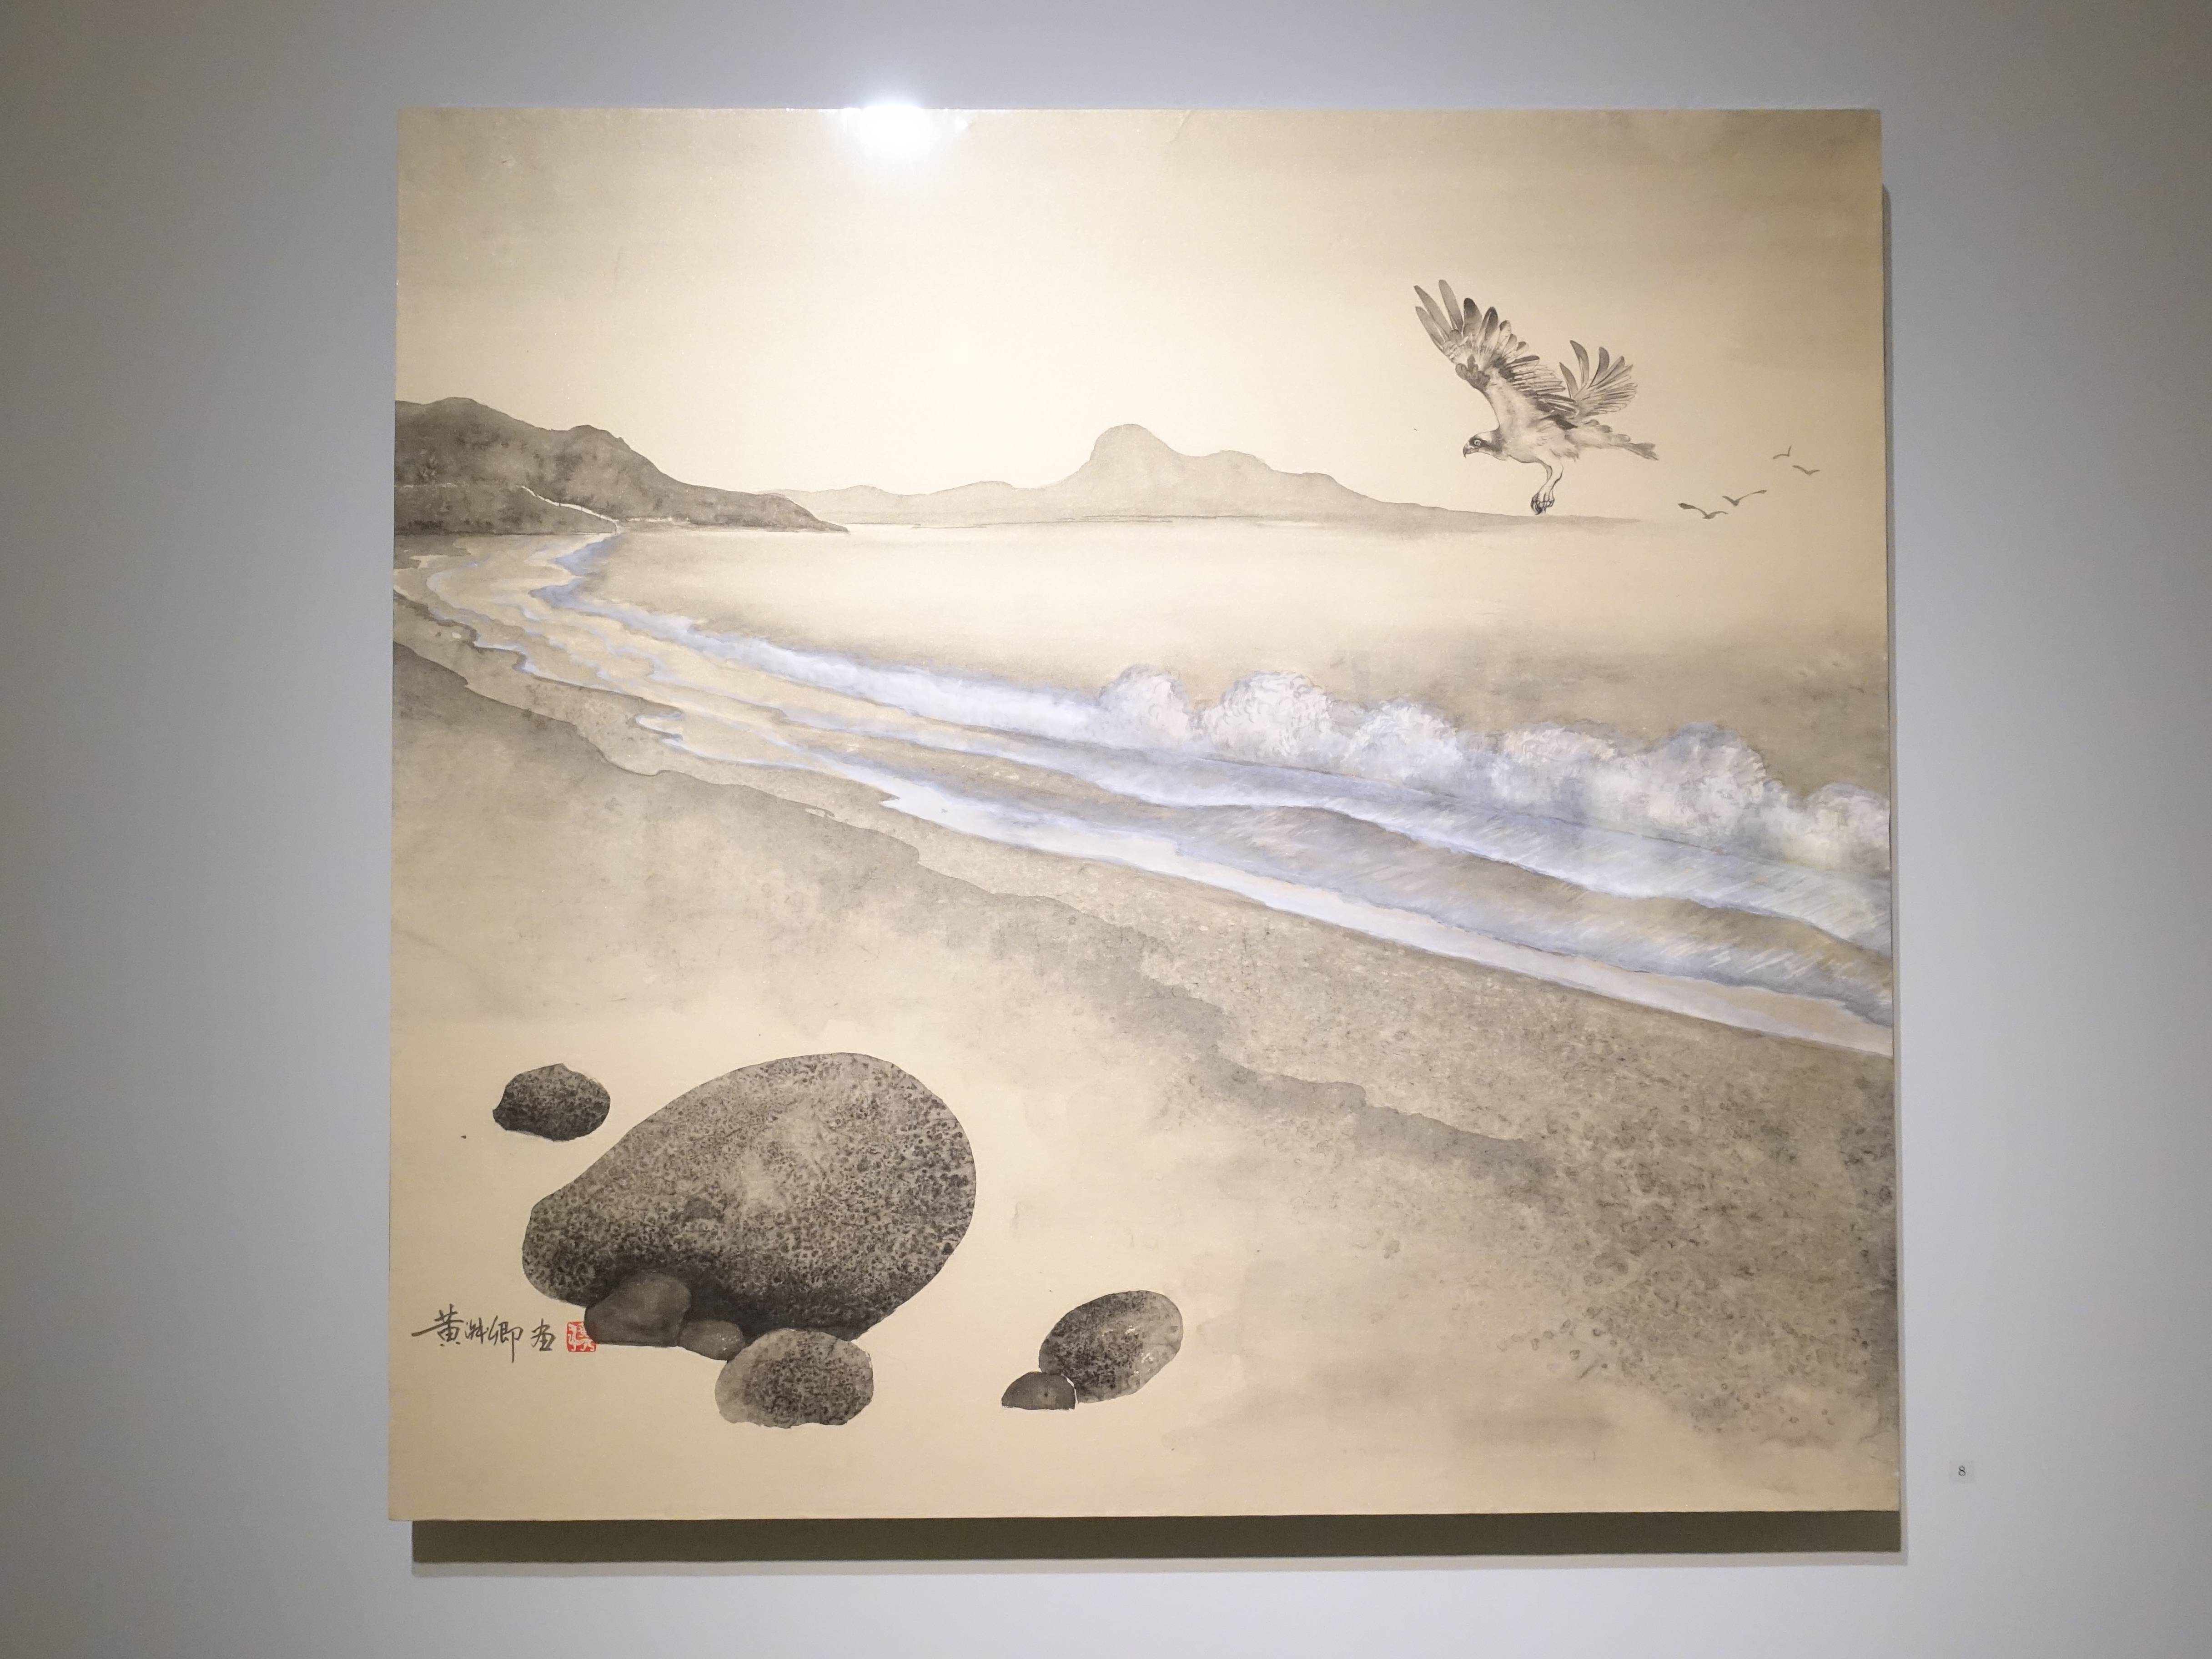 黃淑卿，《太麻里海岸》，70 x 76 cm，紙本、彩墨，2016。